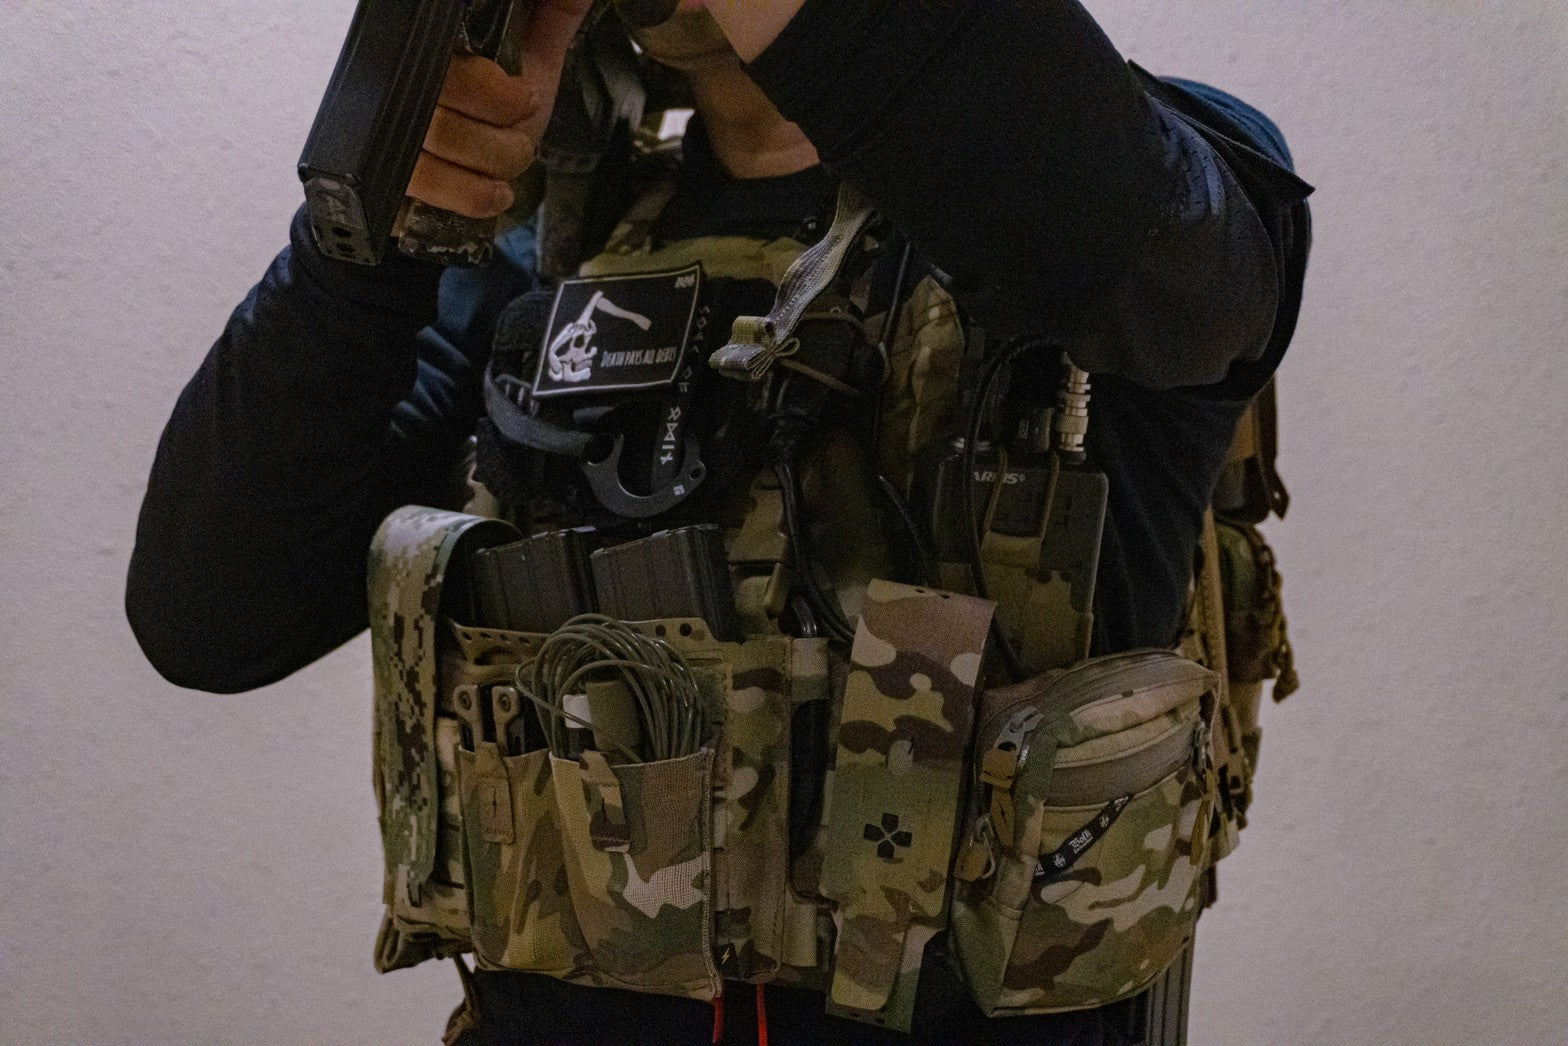 Volk Tactical Gear – VOLK TACTICAL GEAR